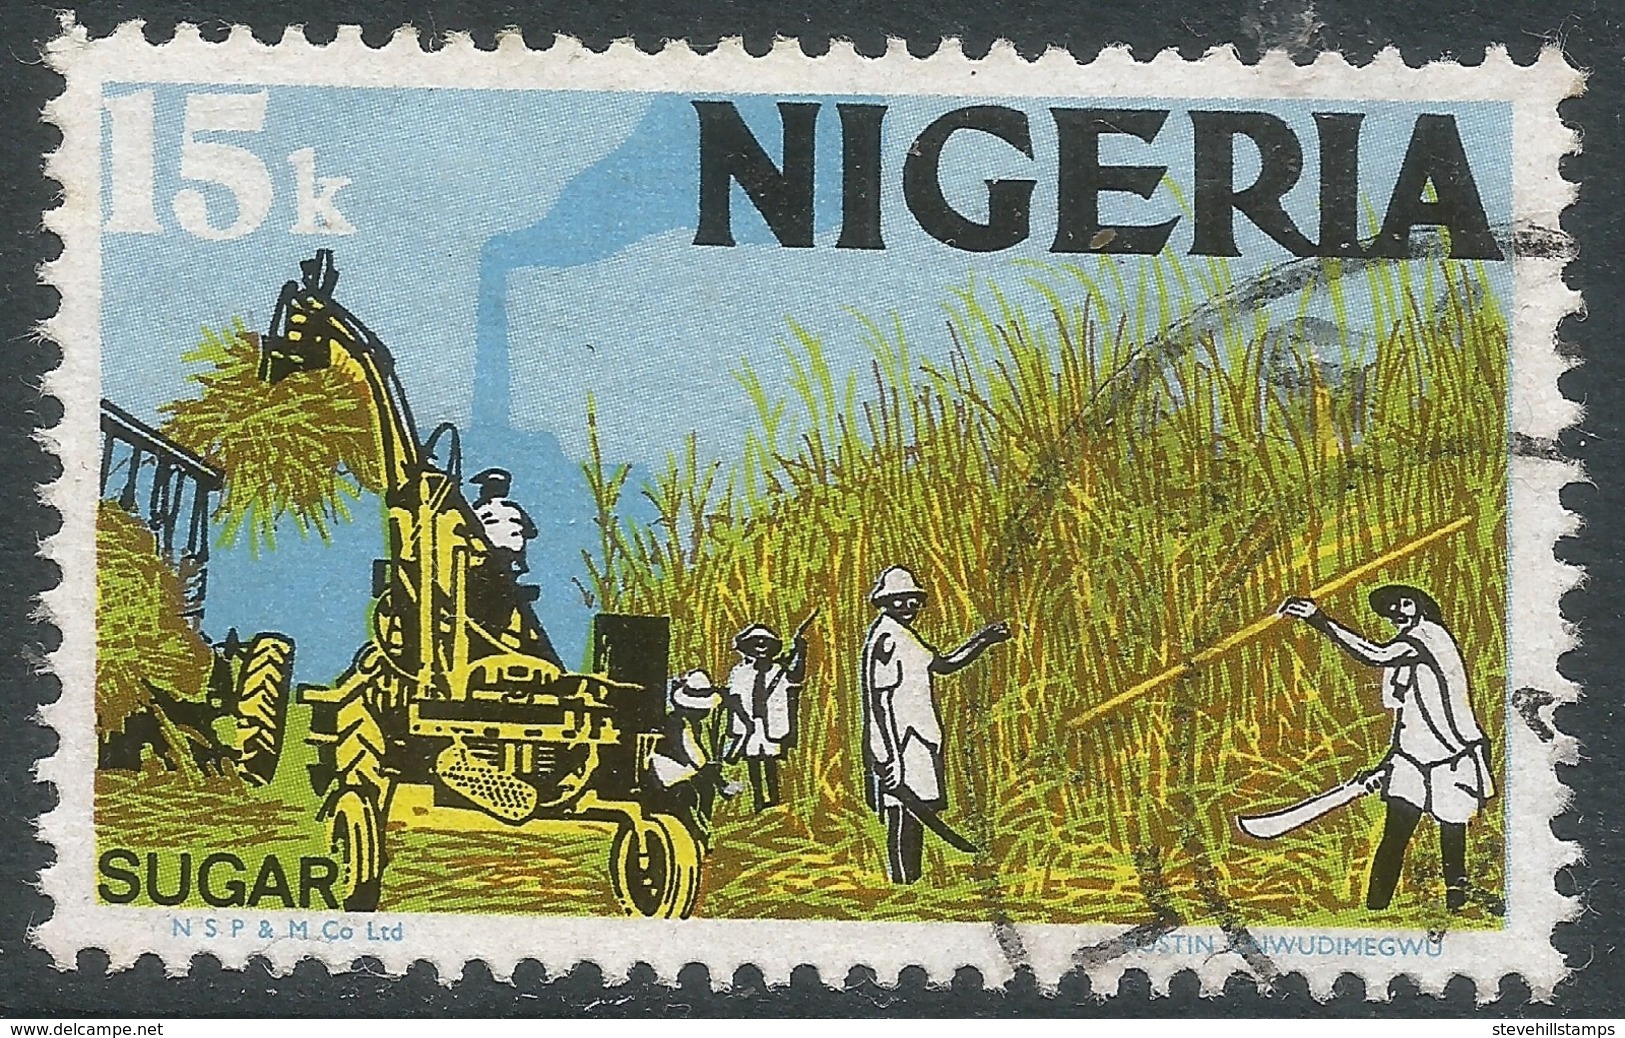 Nigeria. 1973 Definitives. 15k Used. SG 298 - Nigeria (1961-...)